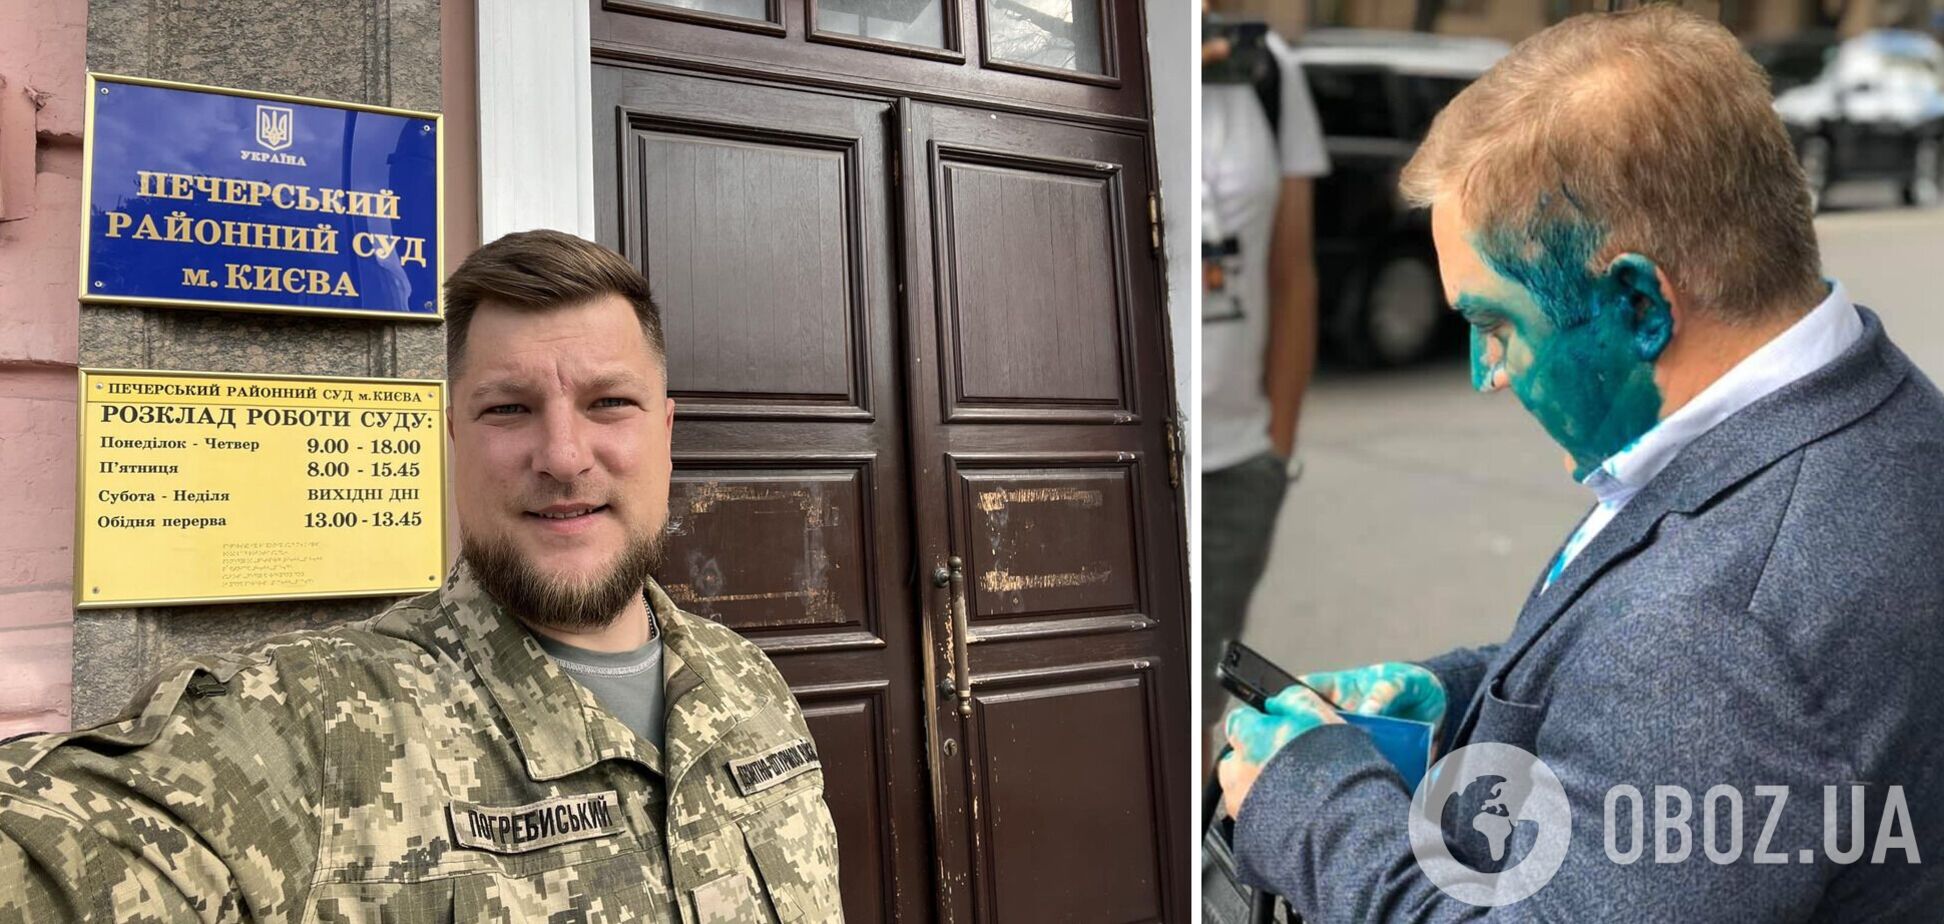 В Украине до сих пор судят воина-десантника Погребиского по иску обвиняемого в госизмене Волошина